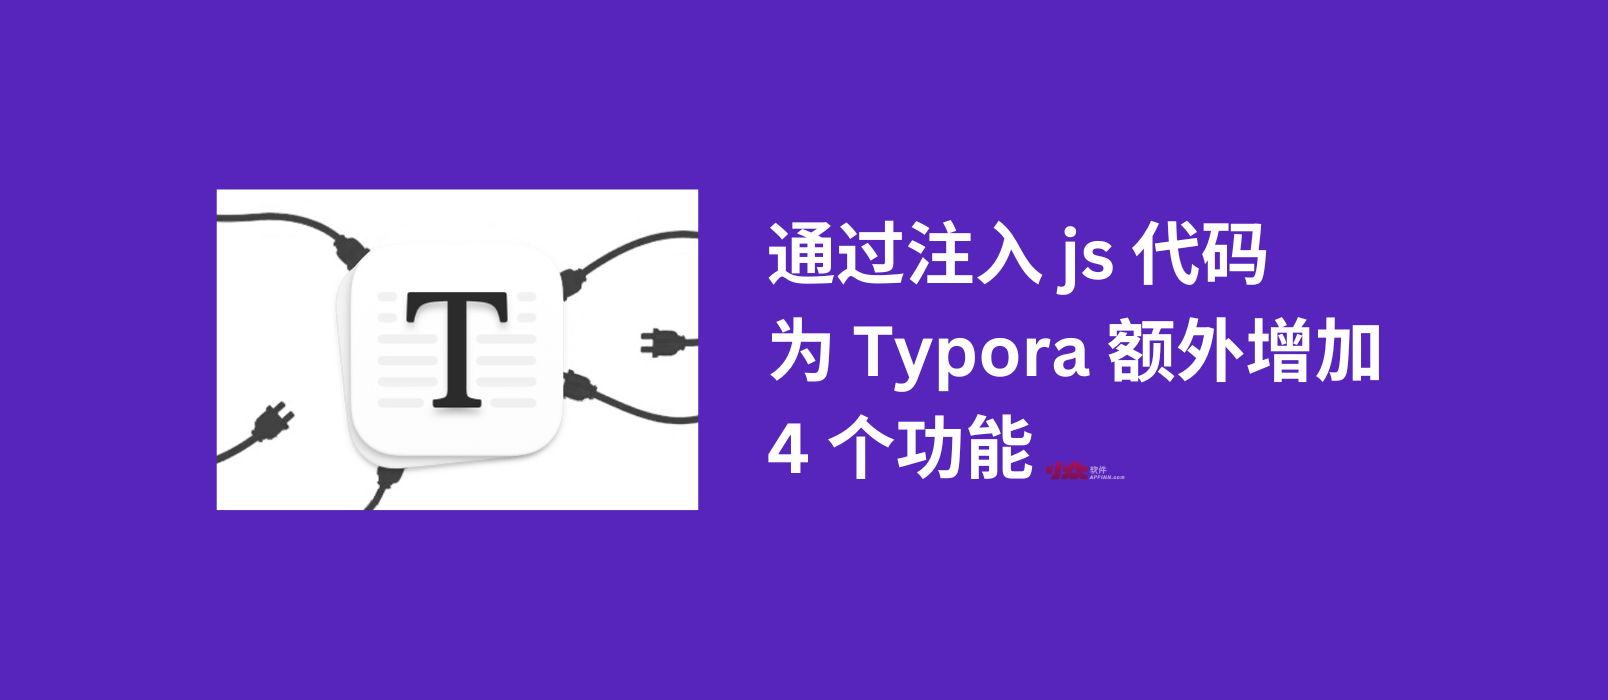 通过注入 js 代码，为 Typora 额外增加 4 个功能 1